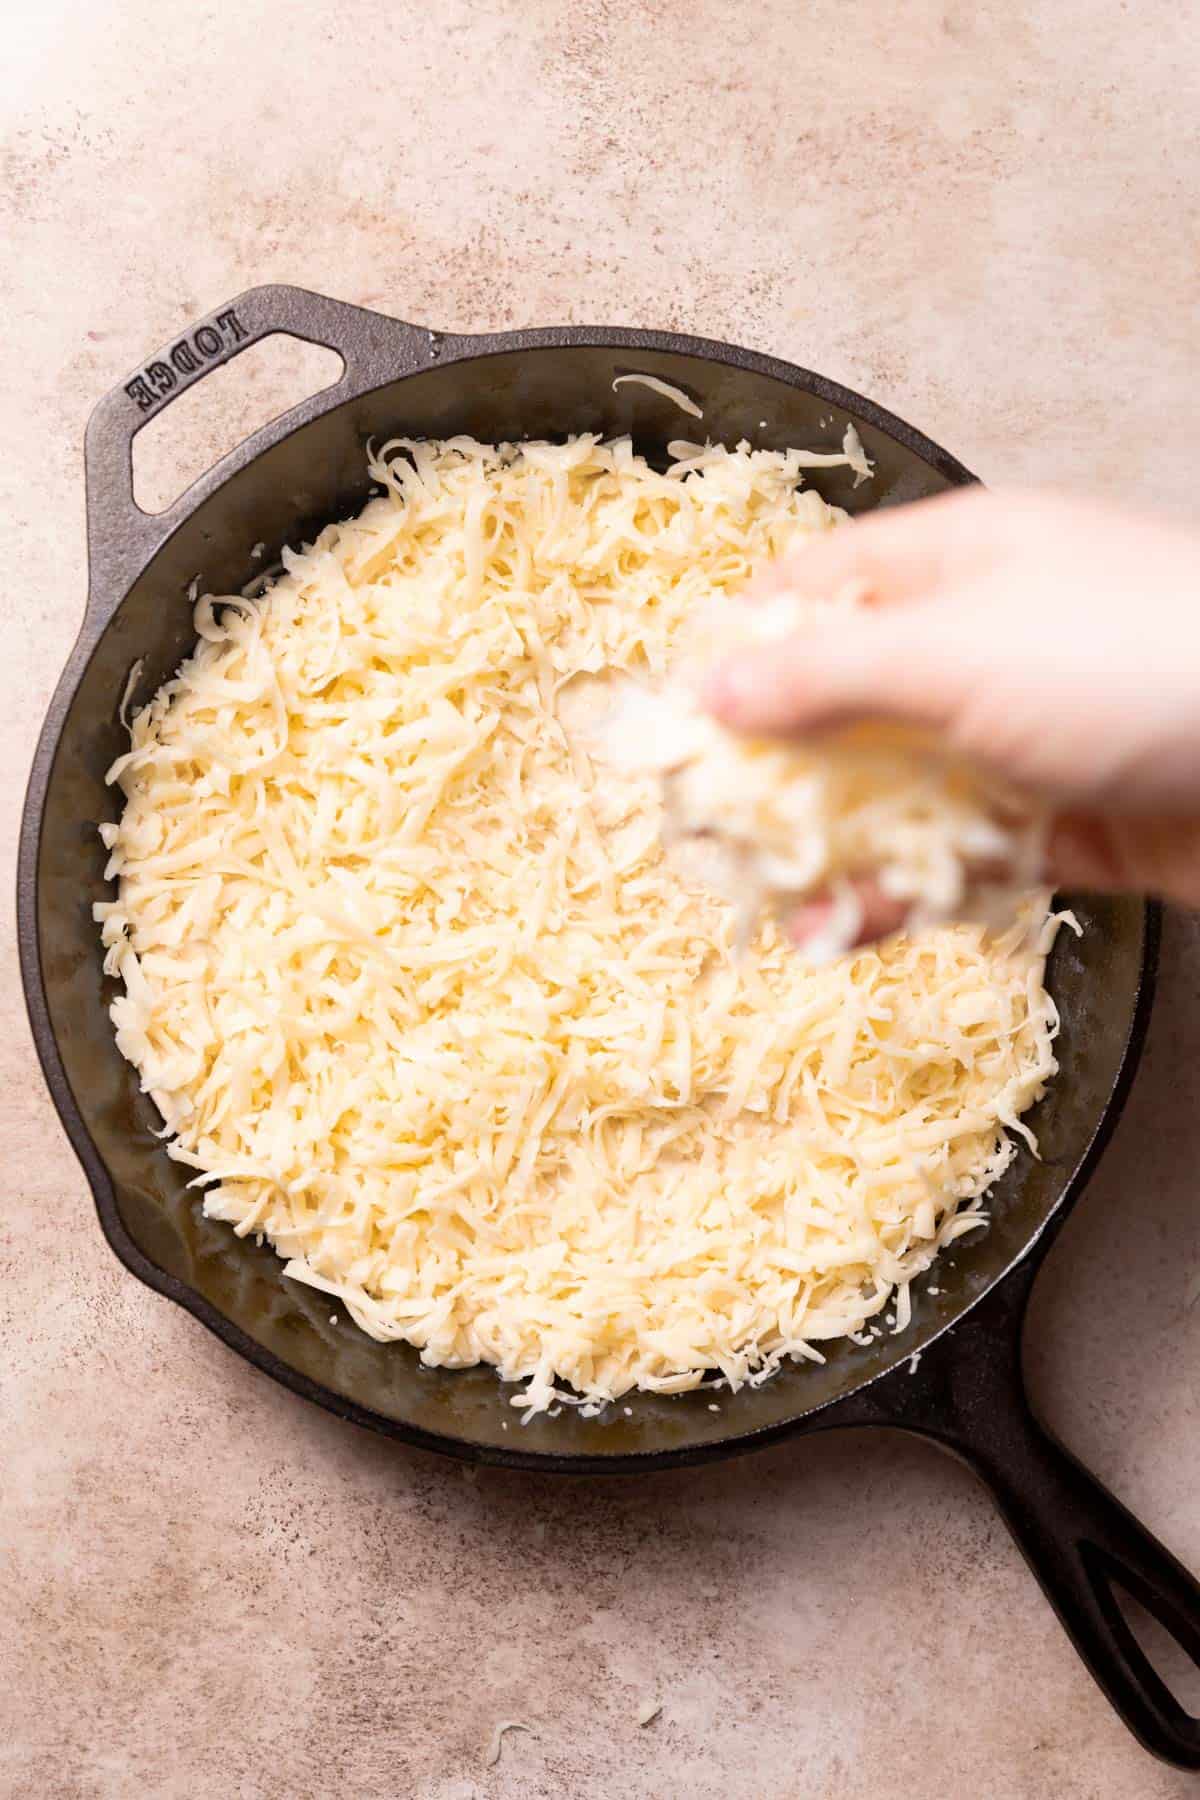 sprinkling mozzarella cheese over the pizza dough in a pan.